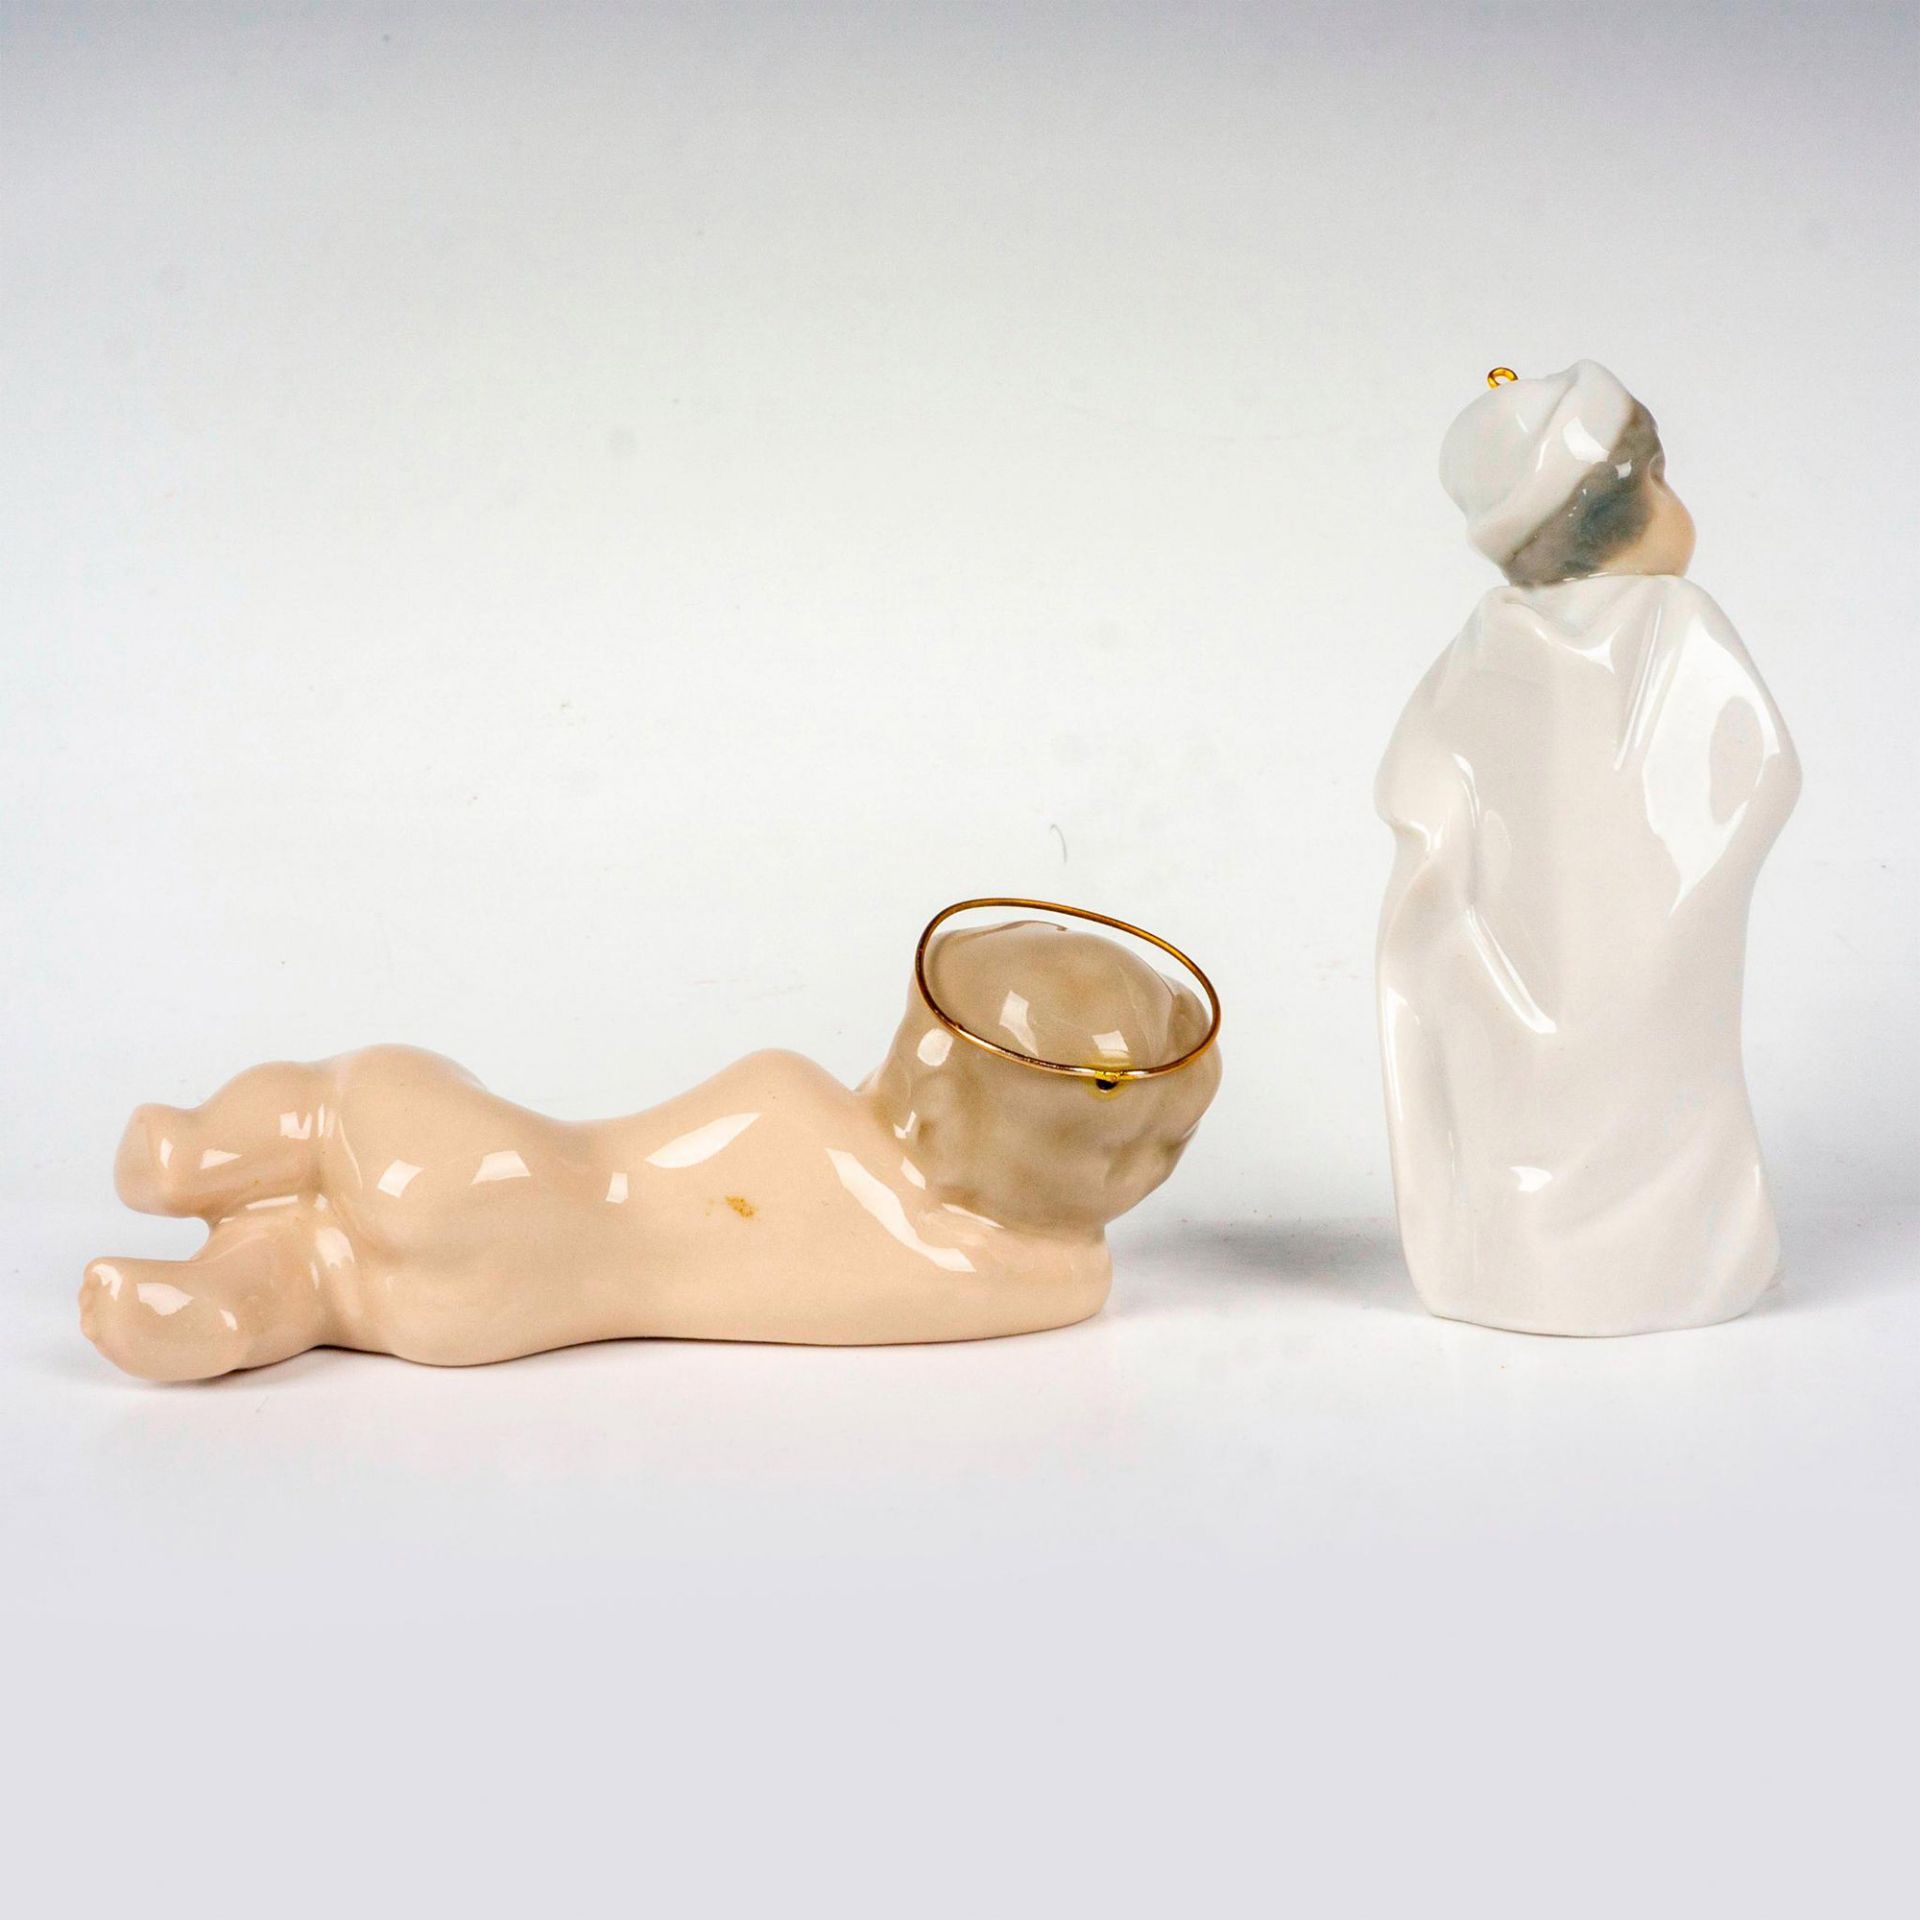 2pc Lladro Porcelain Religious Figurines - Bild 2 aus 3